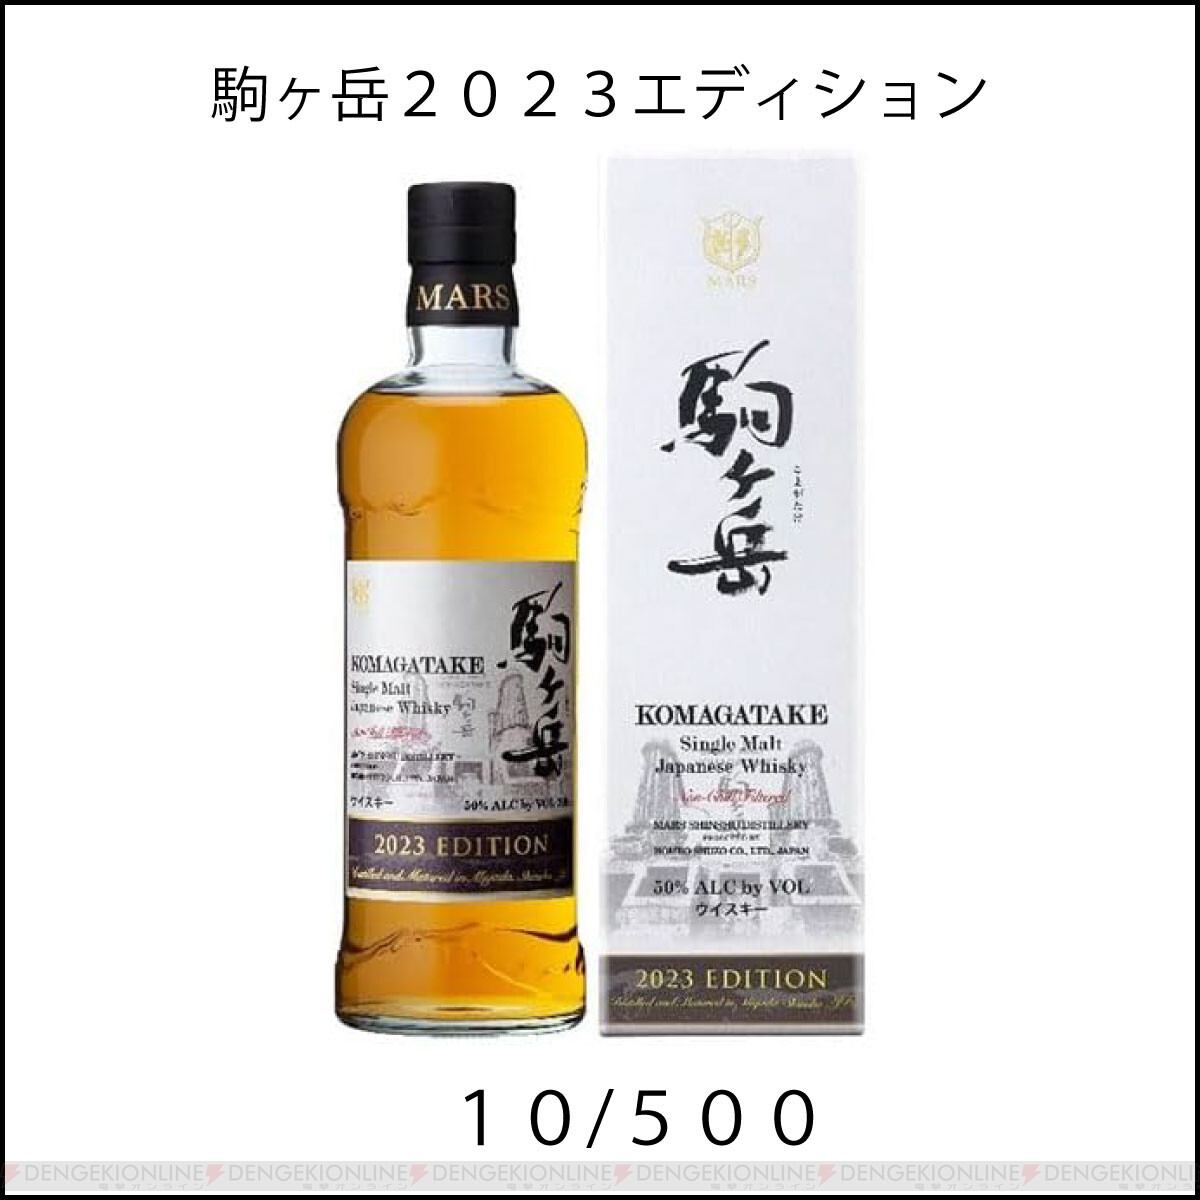 山崎リミテッドエディション2023 空き瓶 【97%OFF!】 - ウイスキー